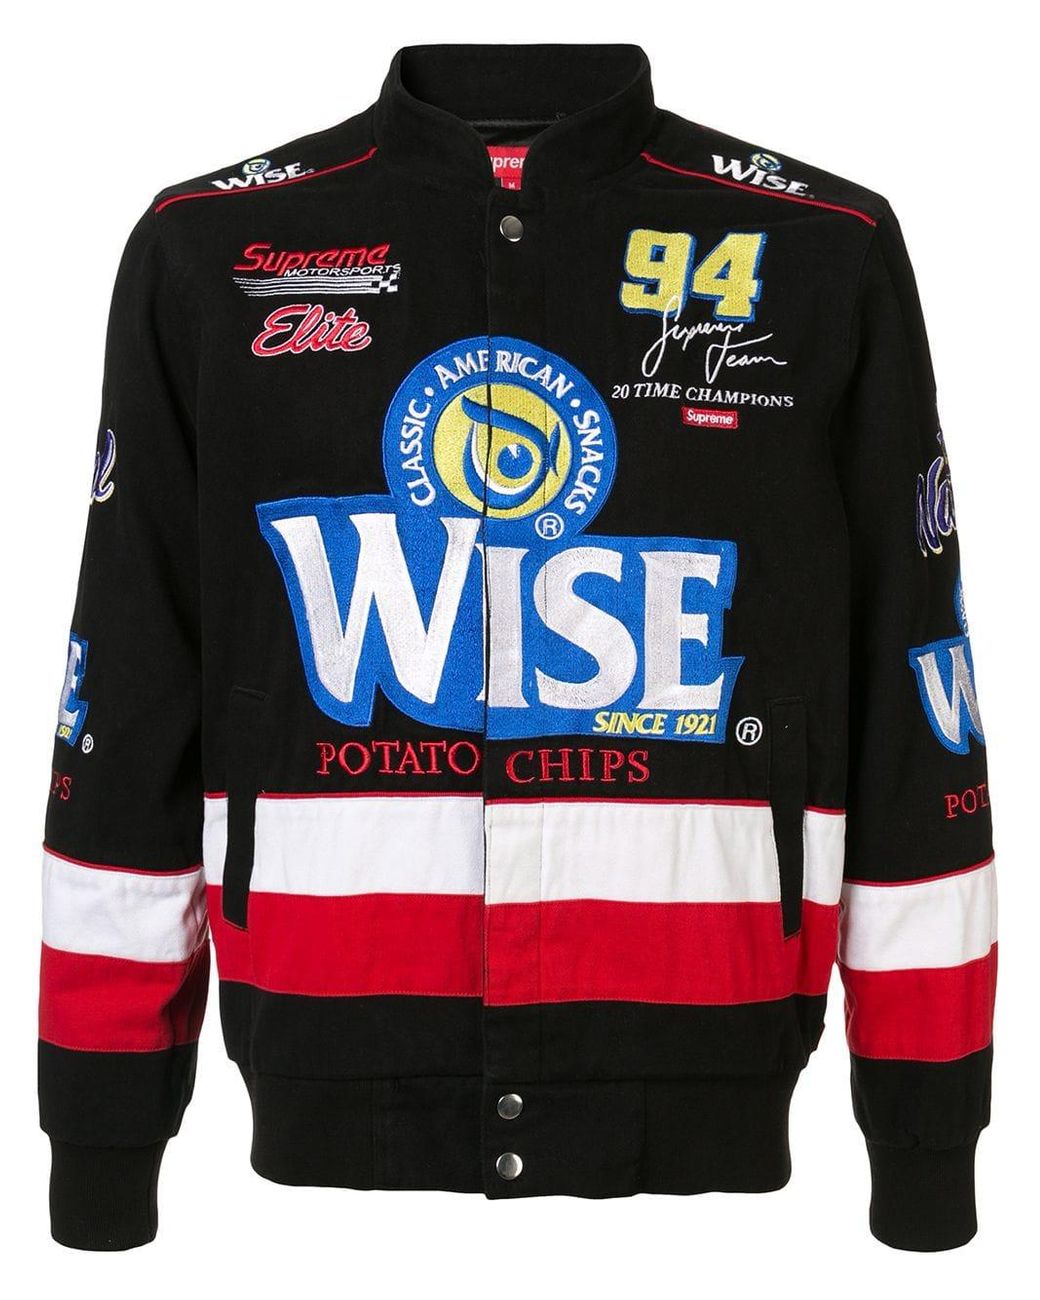 本州送料無料  jacket racing wise 13aw supreme ナイロンジャケット